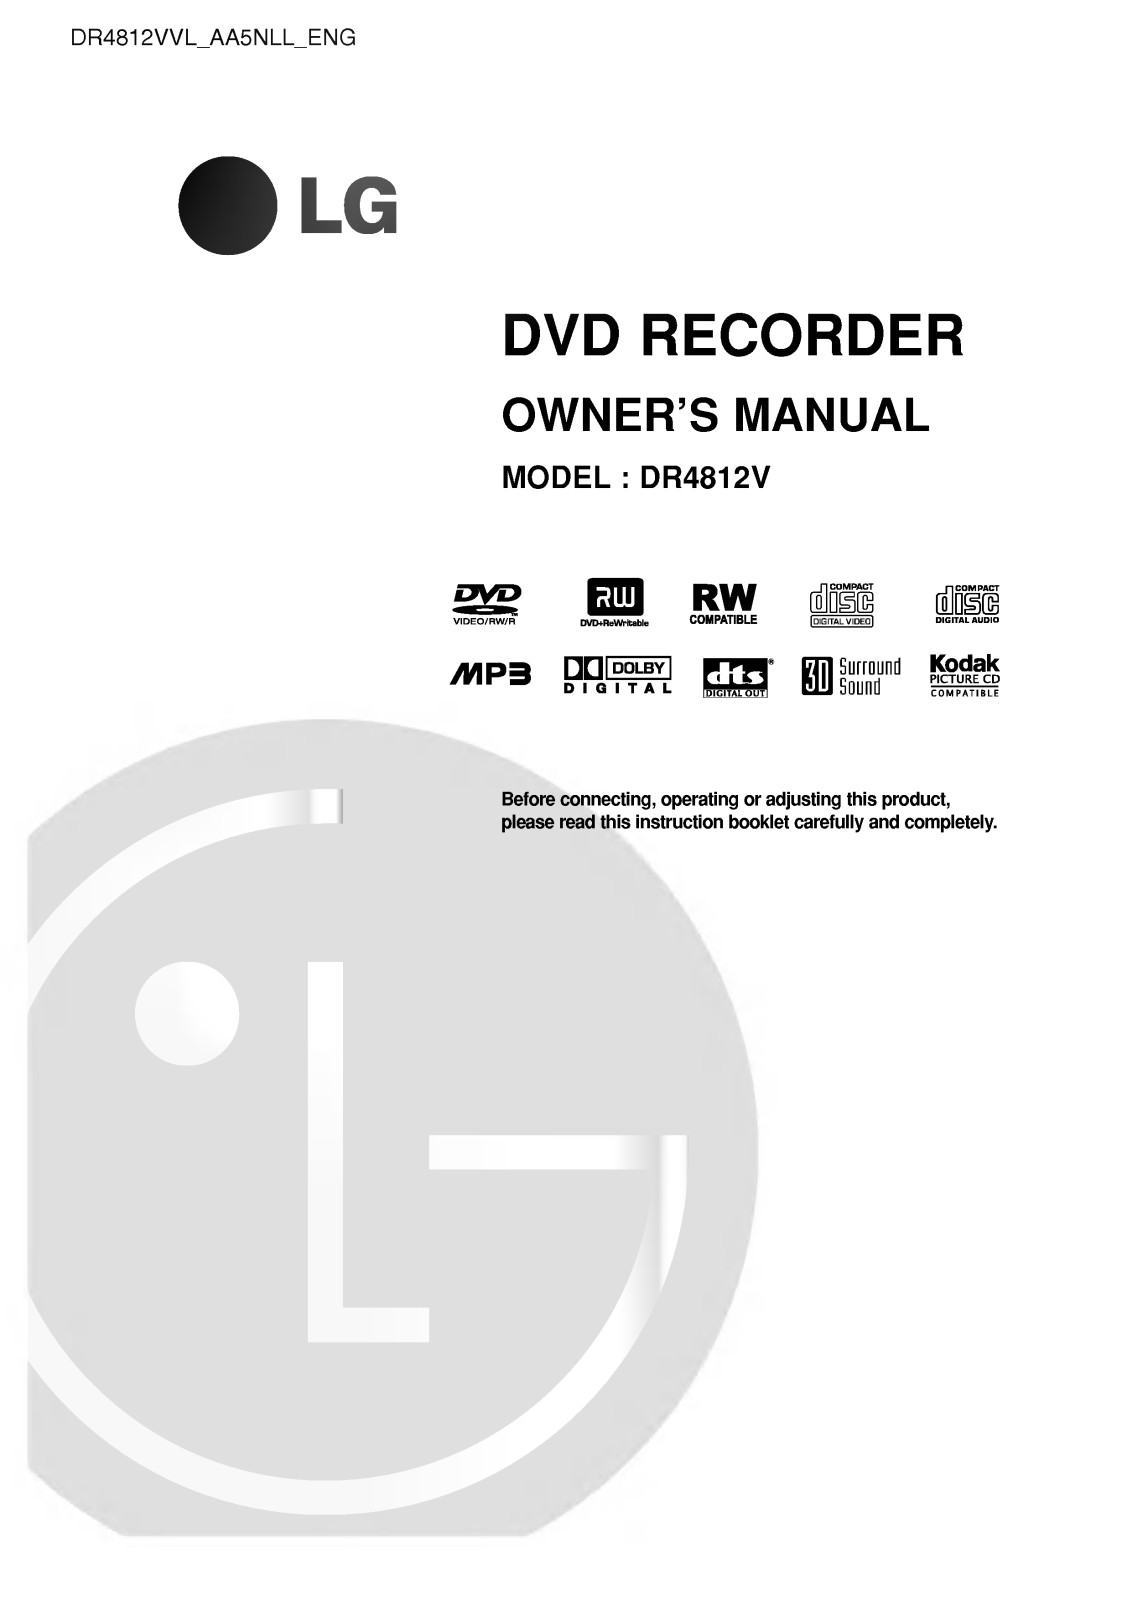 LG DR4812VVL Owner’s Manual